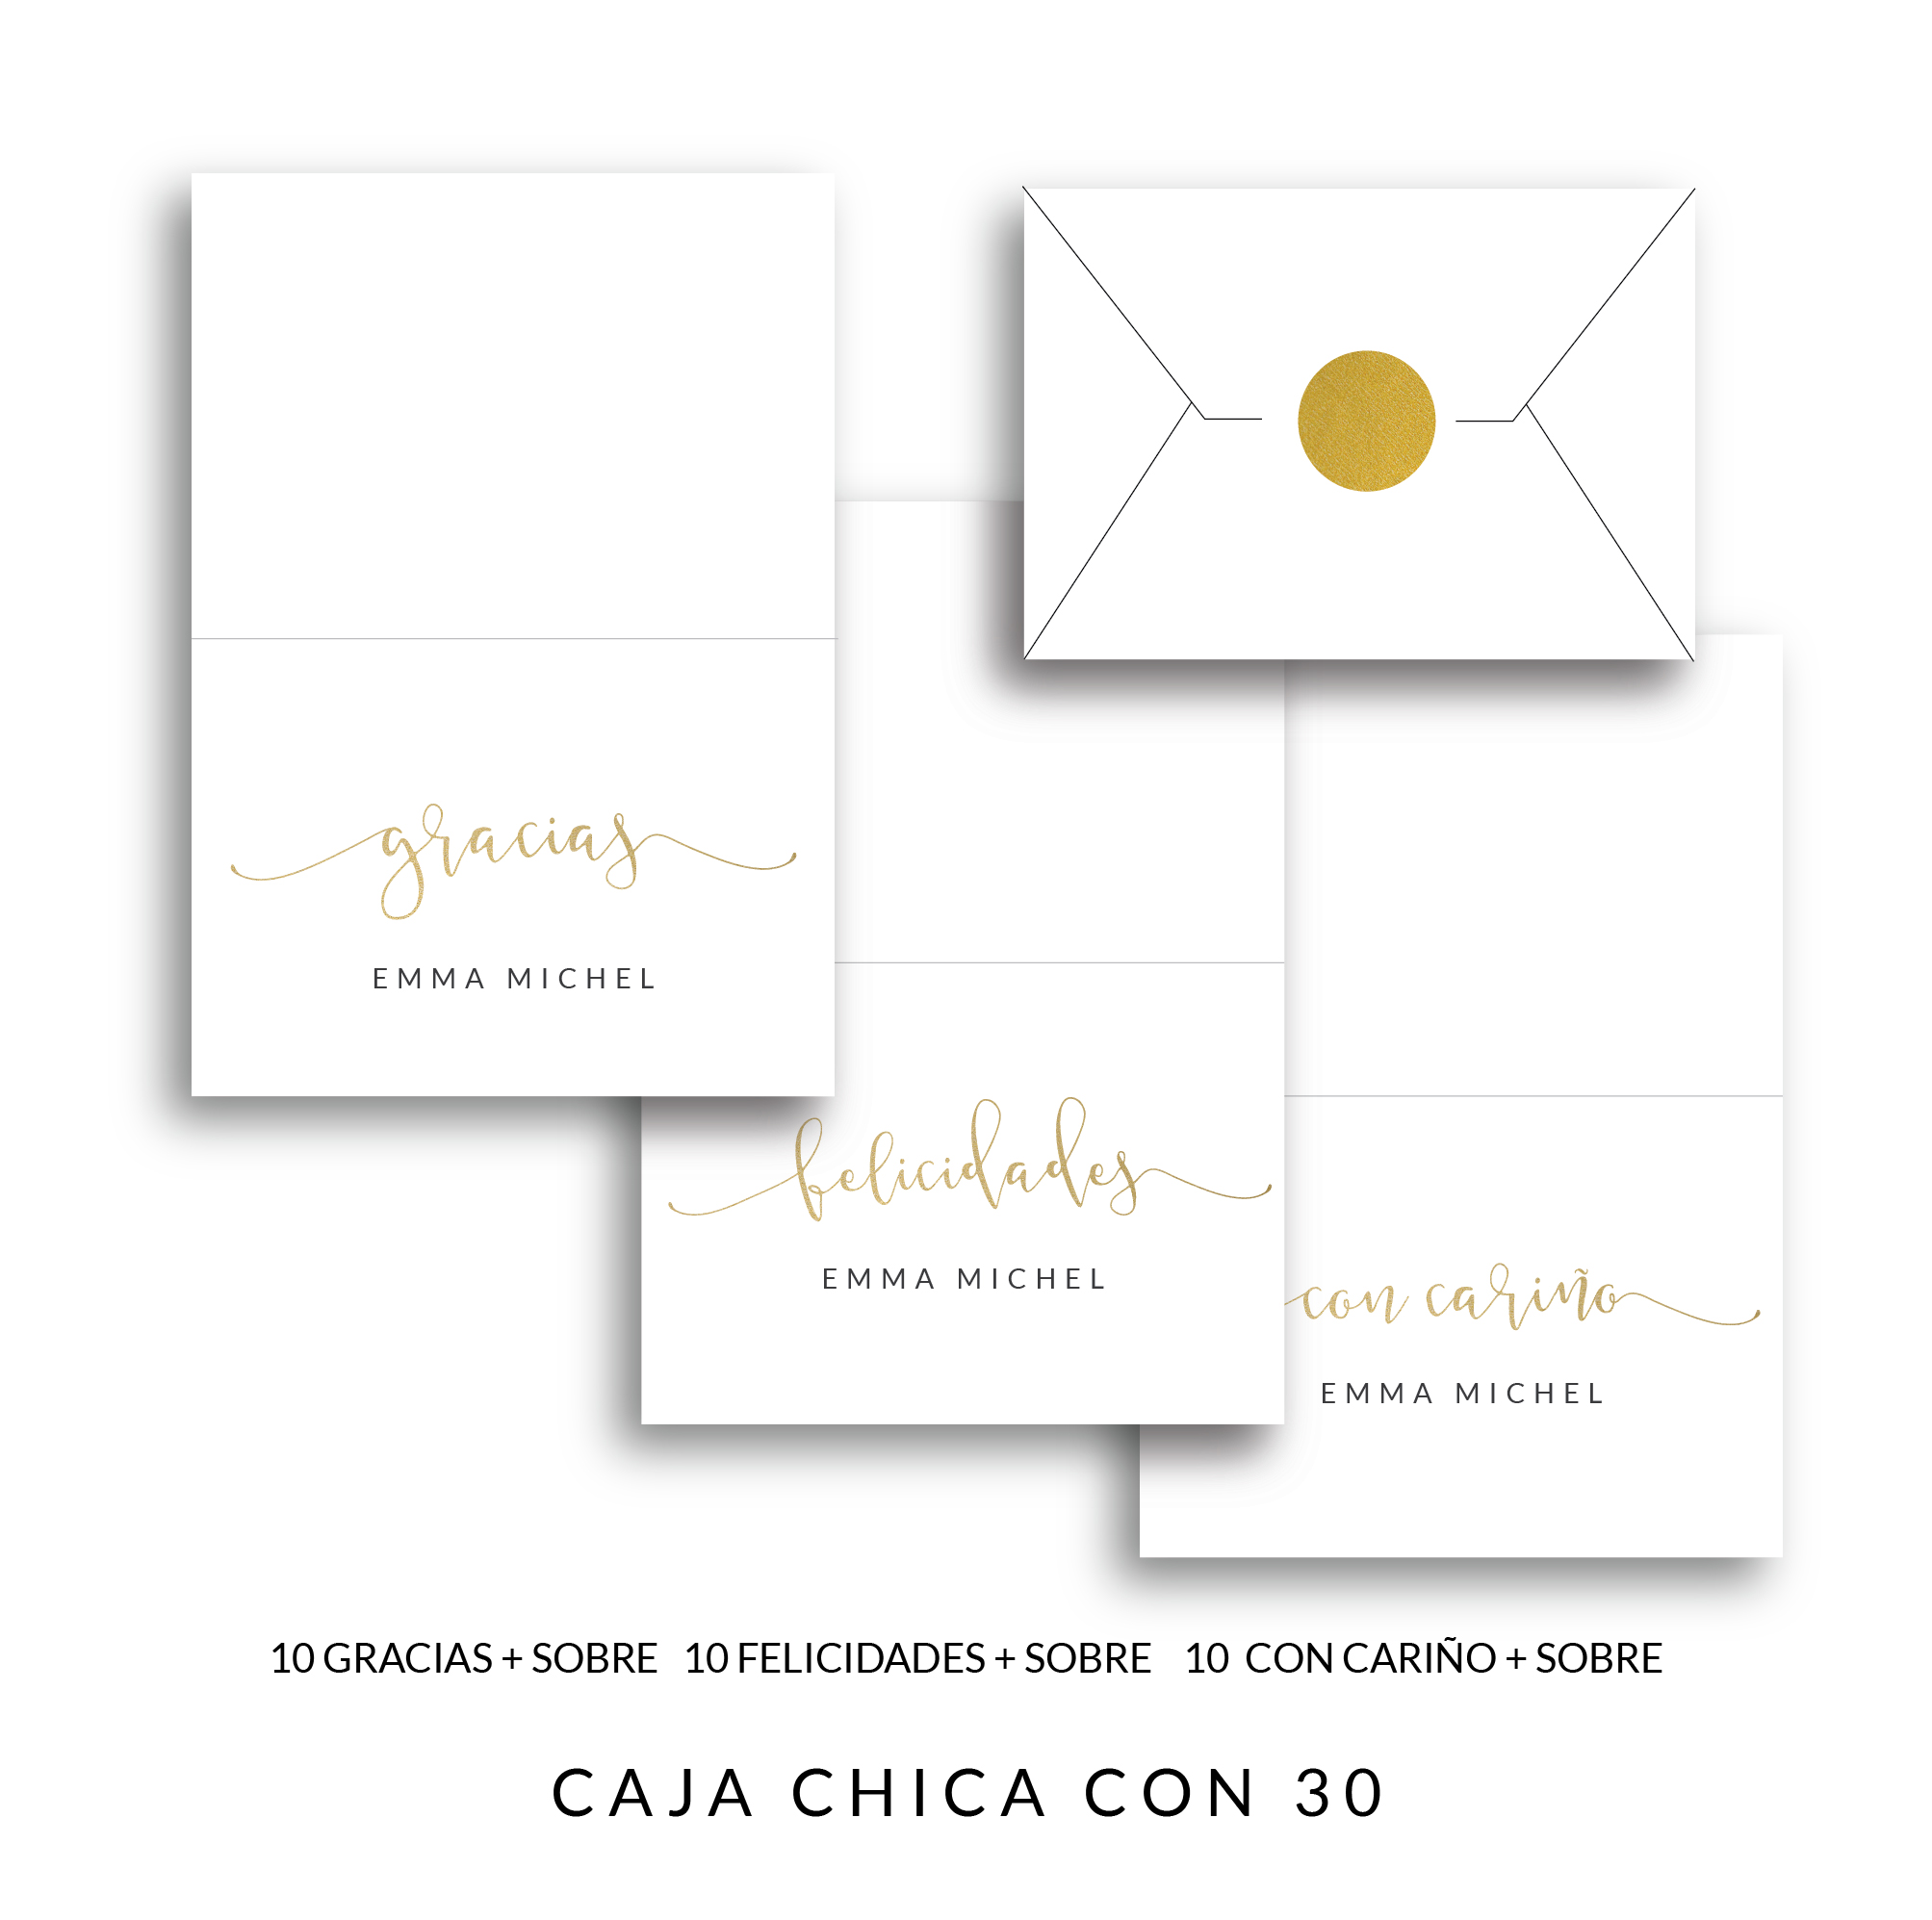 CAJA CHICA CON 30